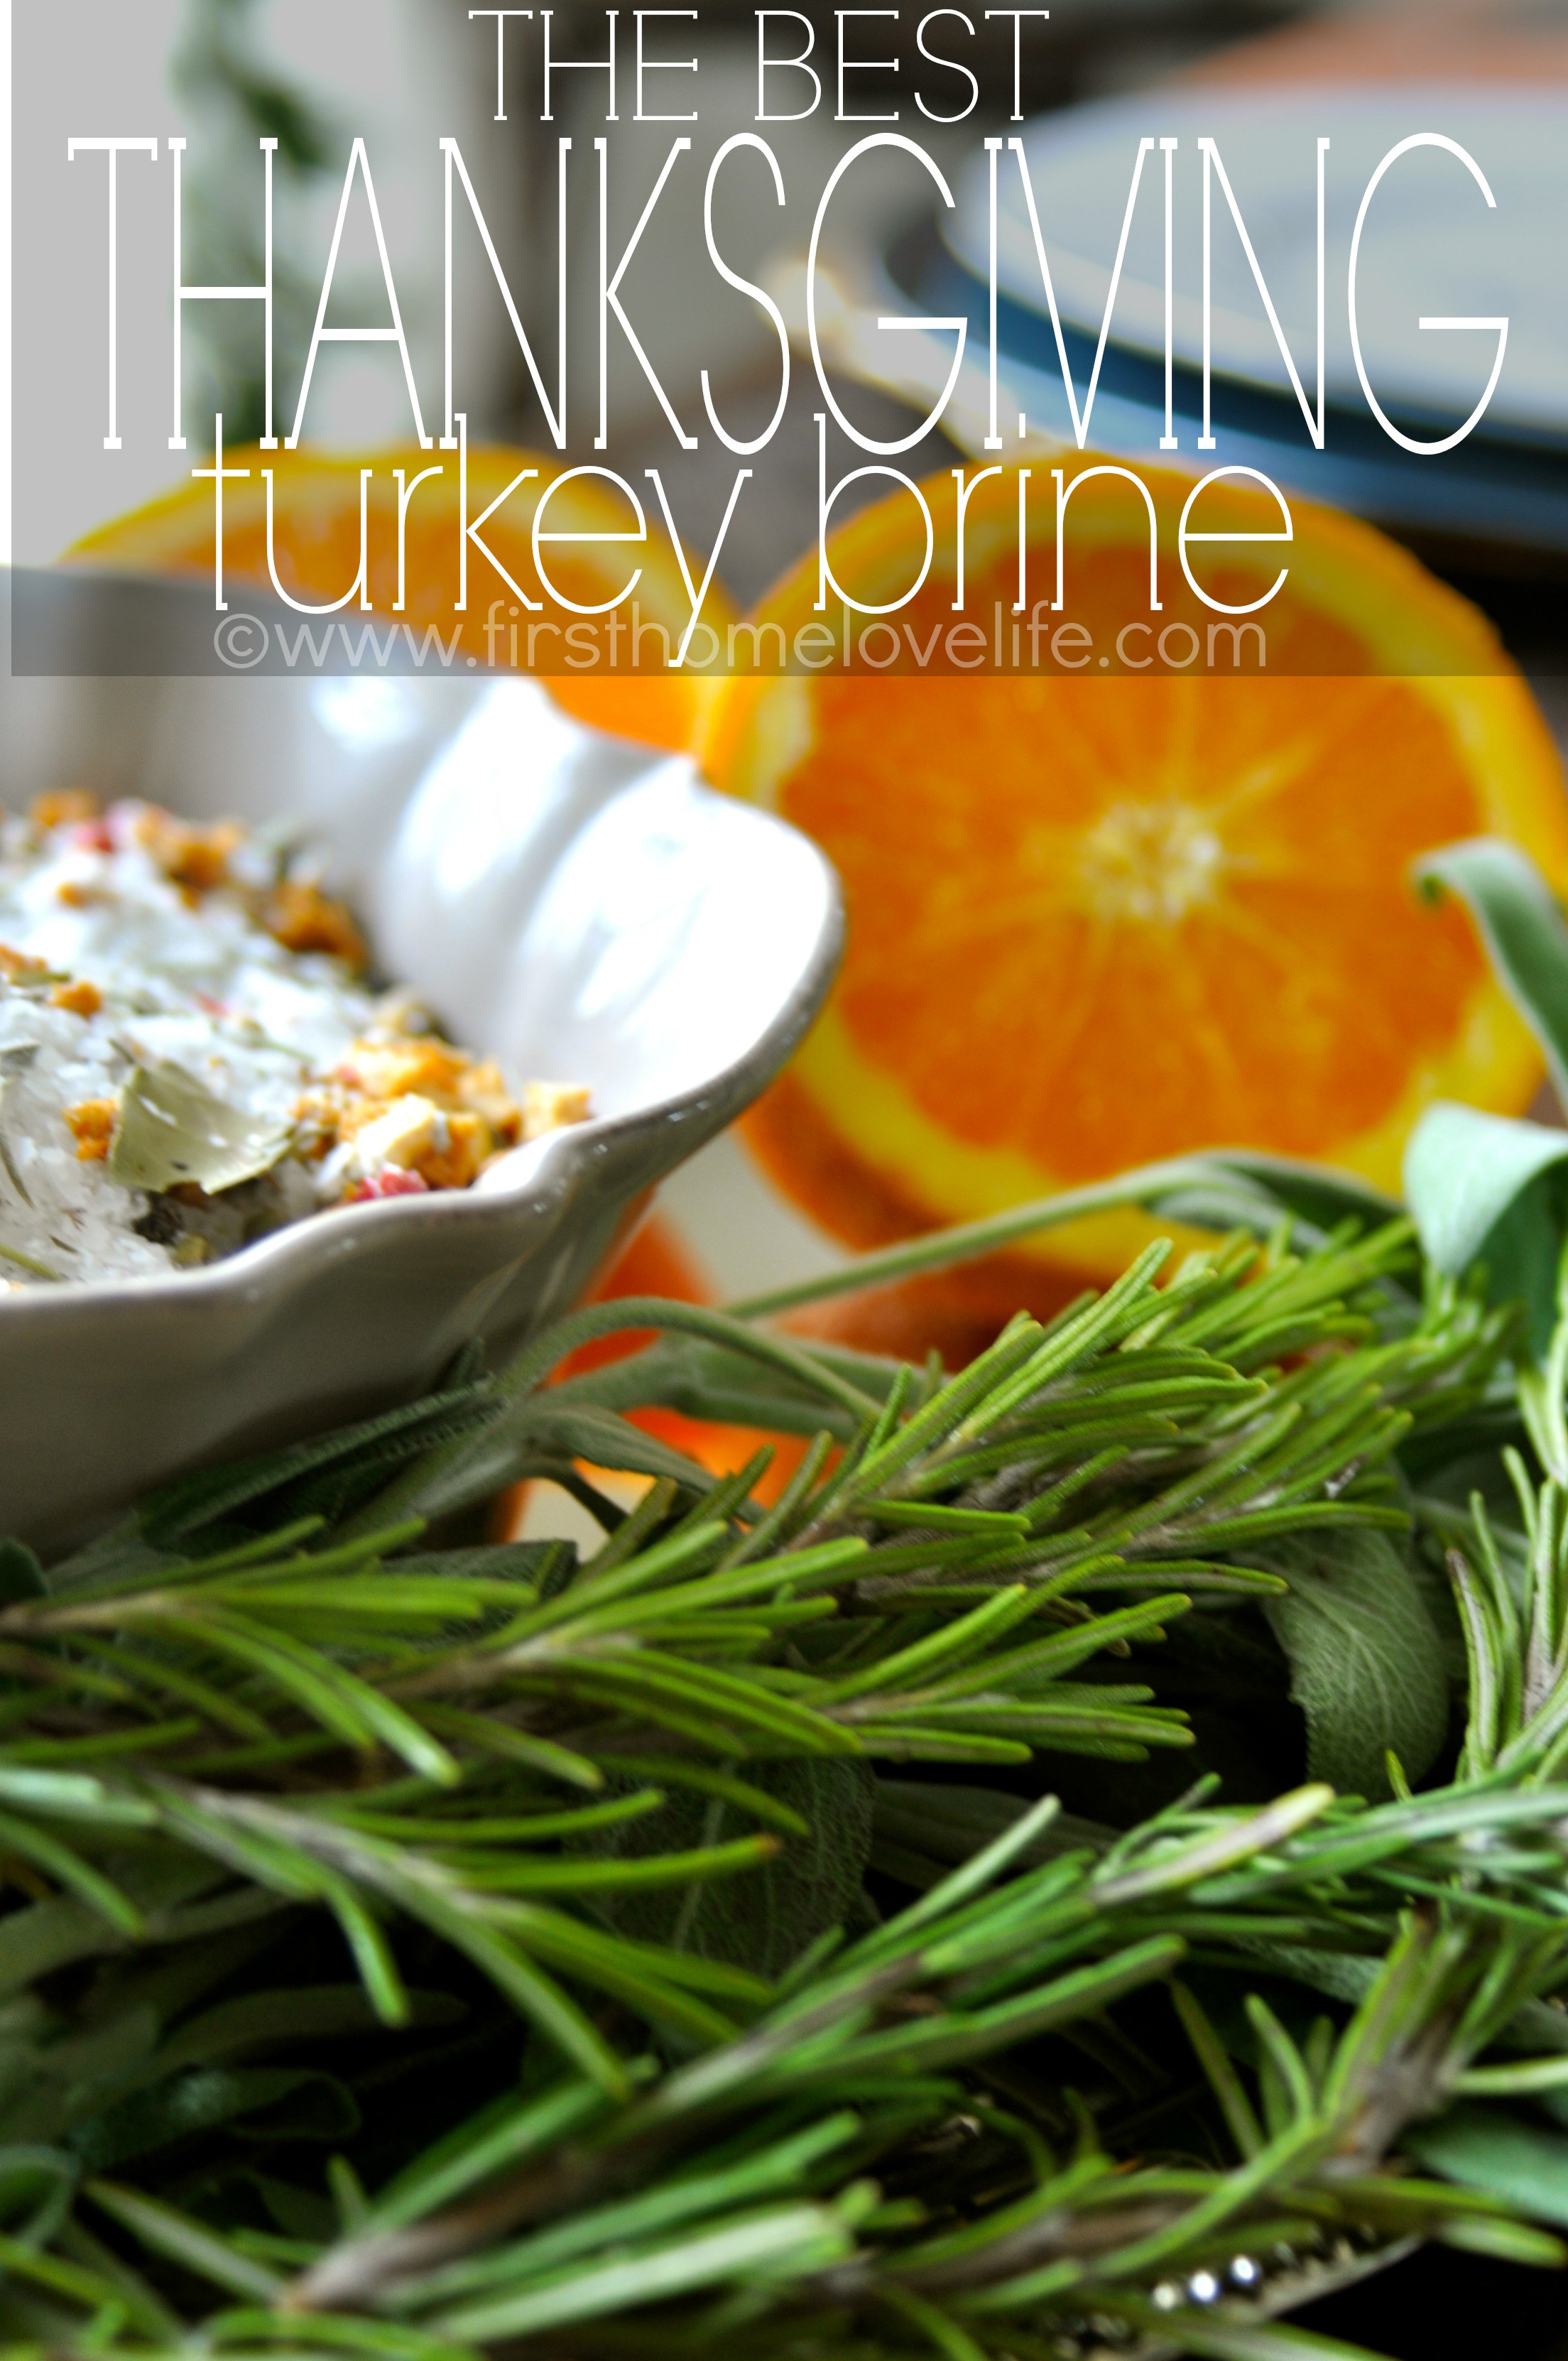 Thanksgiving Turkey Brine
 The Best Thanksgiving Turkey Brine First Home Love Life